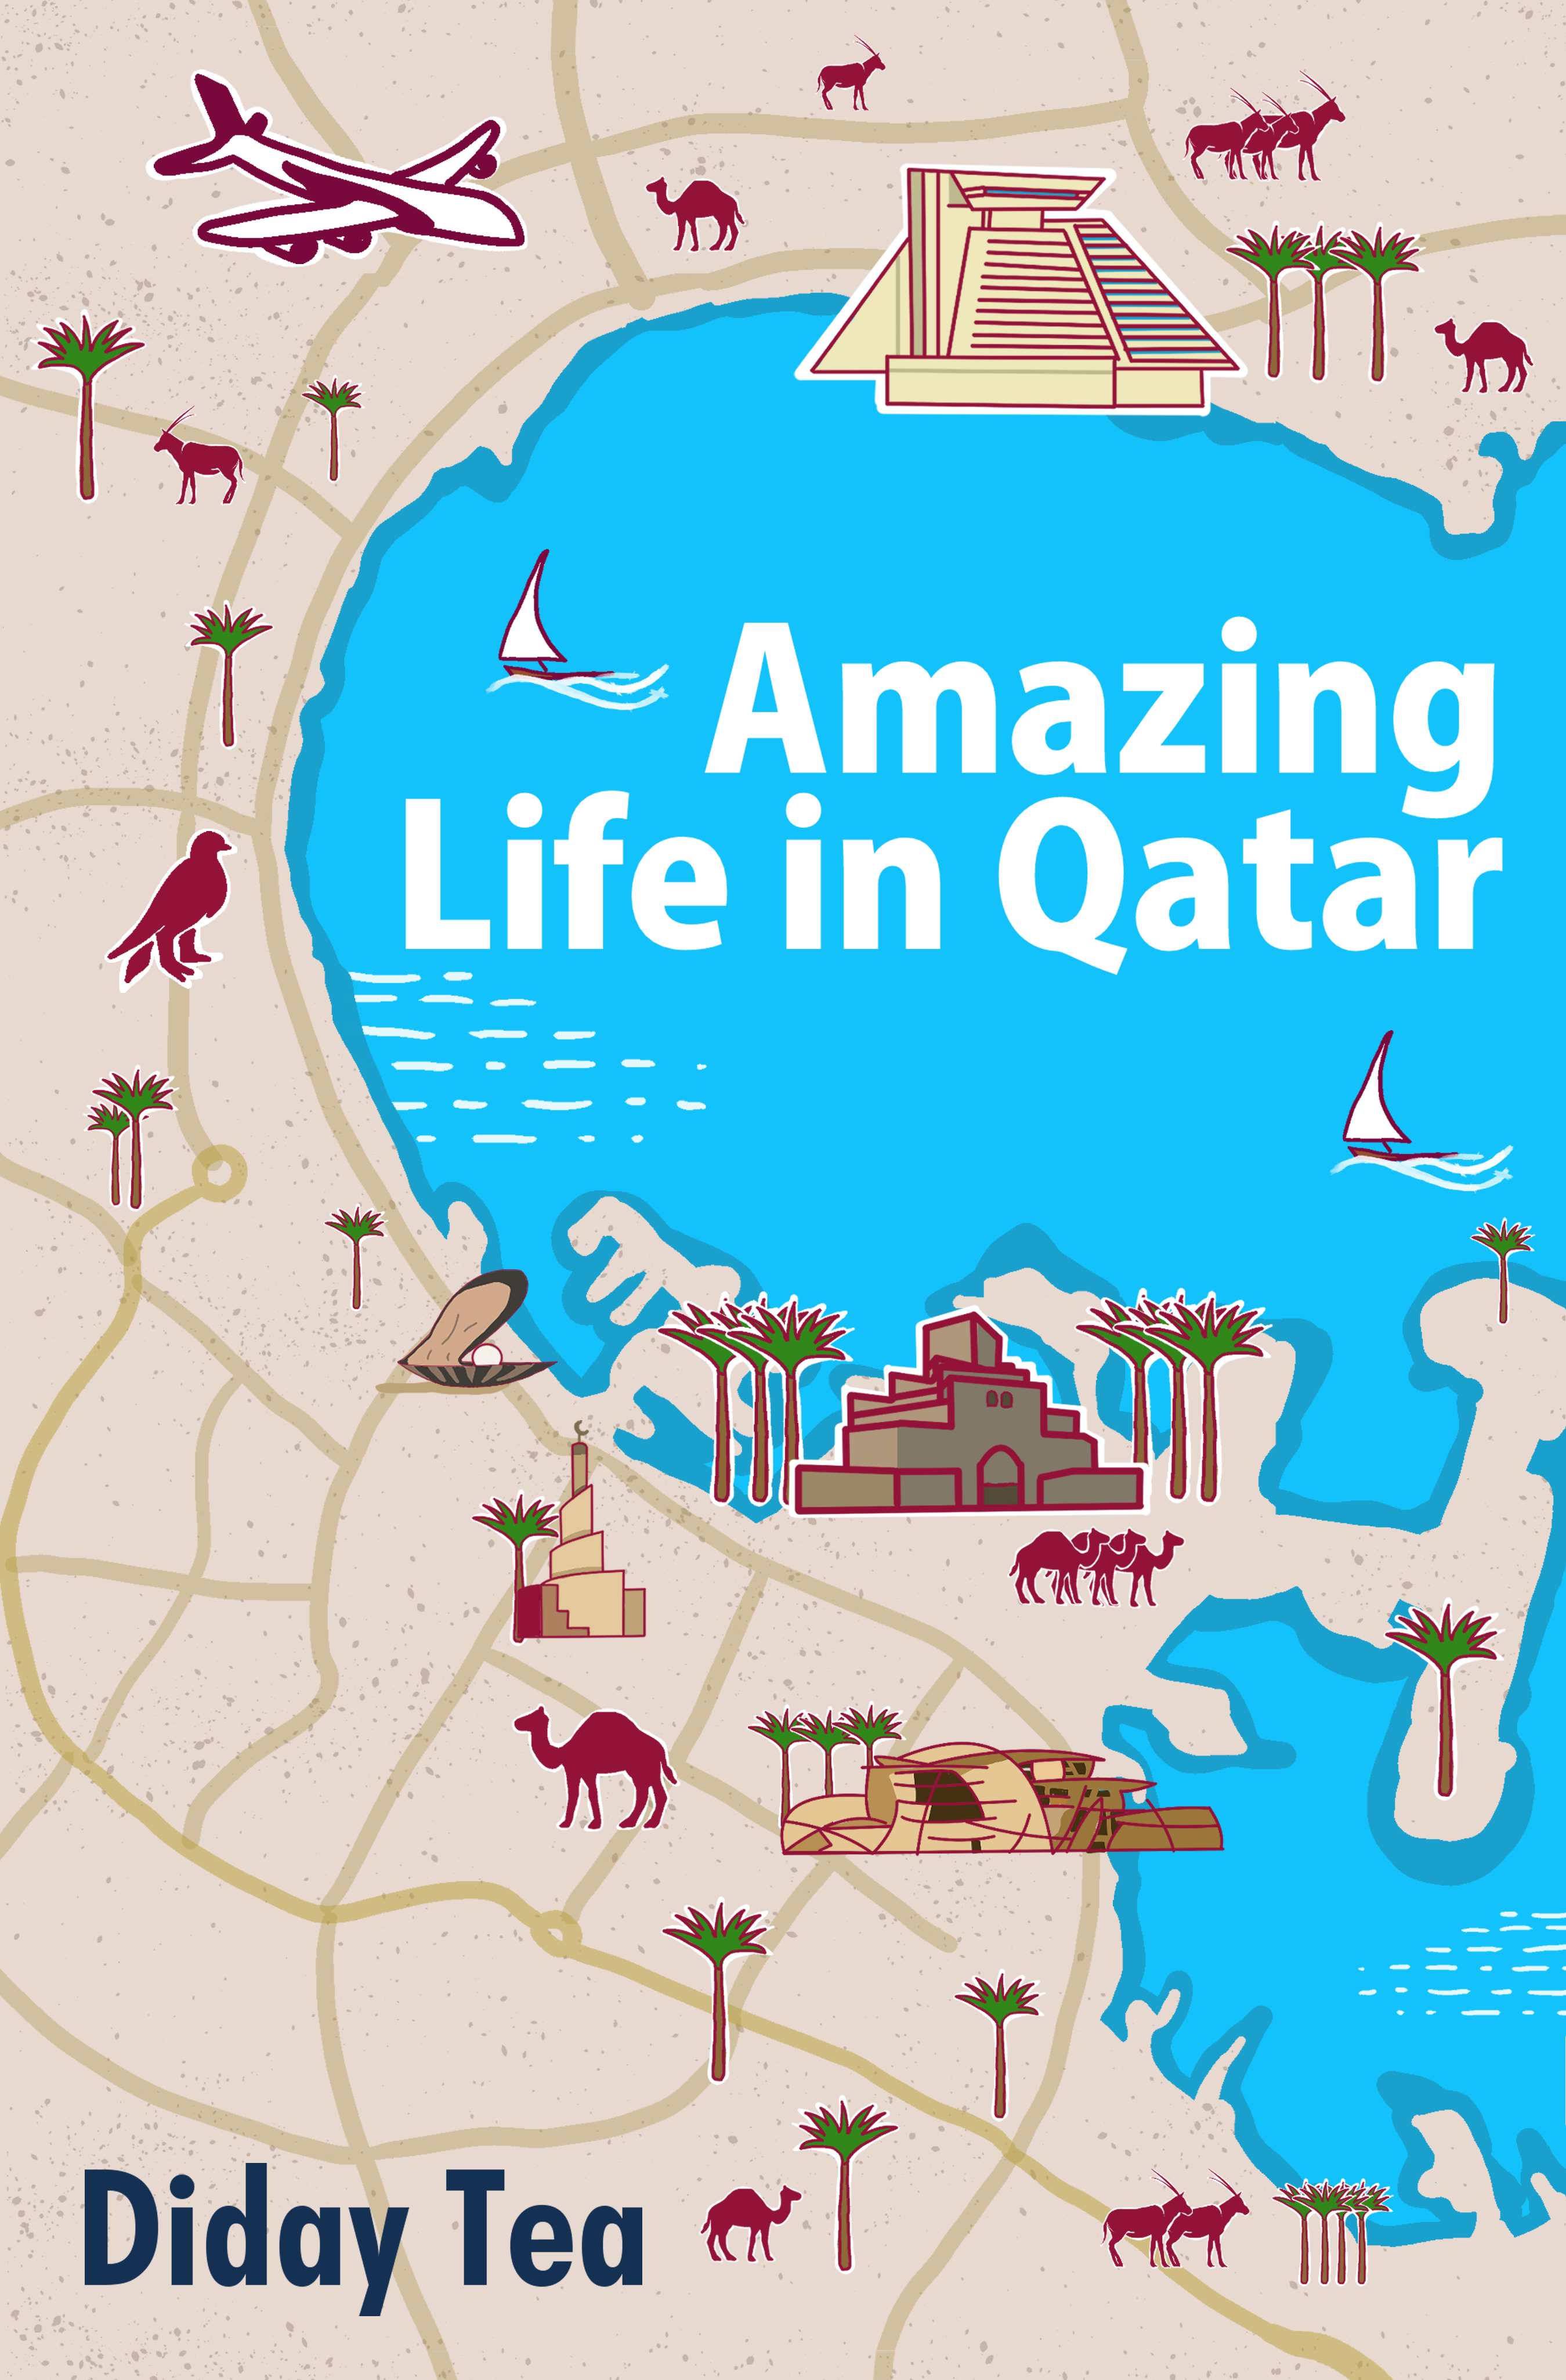 Amazing life in Qatar